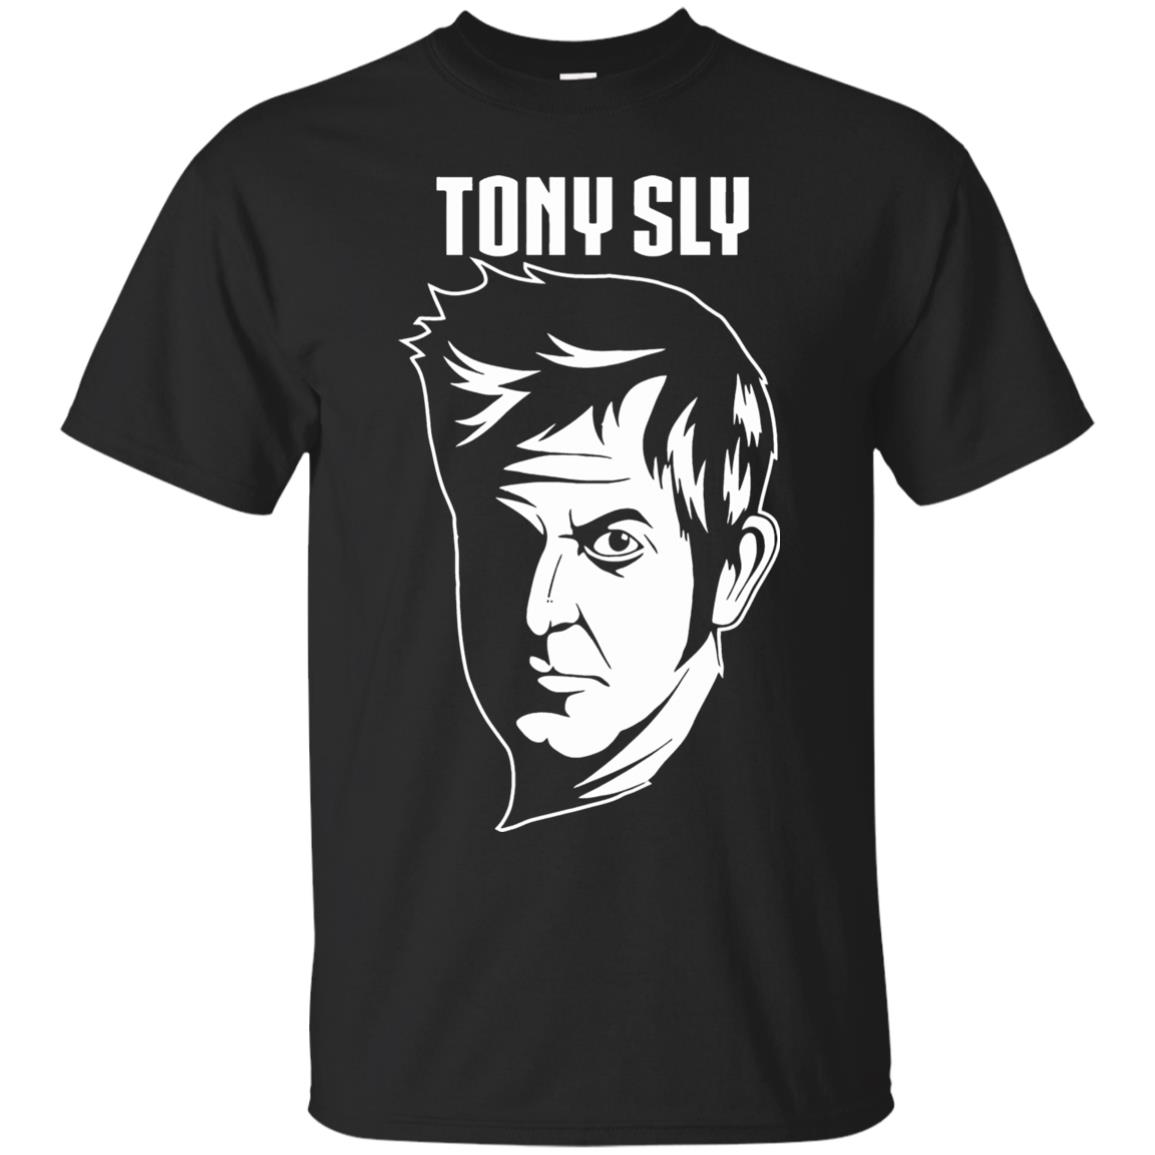 tony sly shirt - black